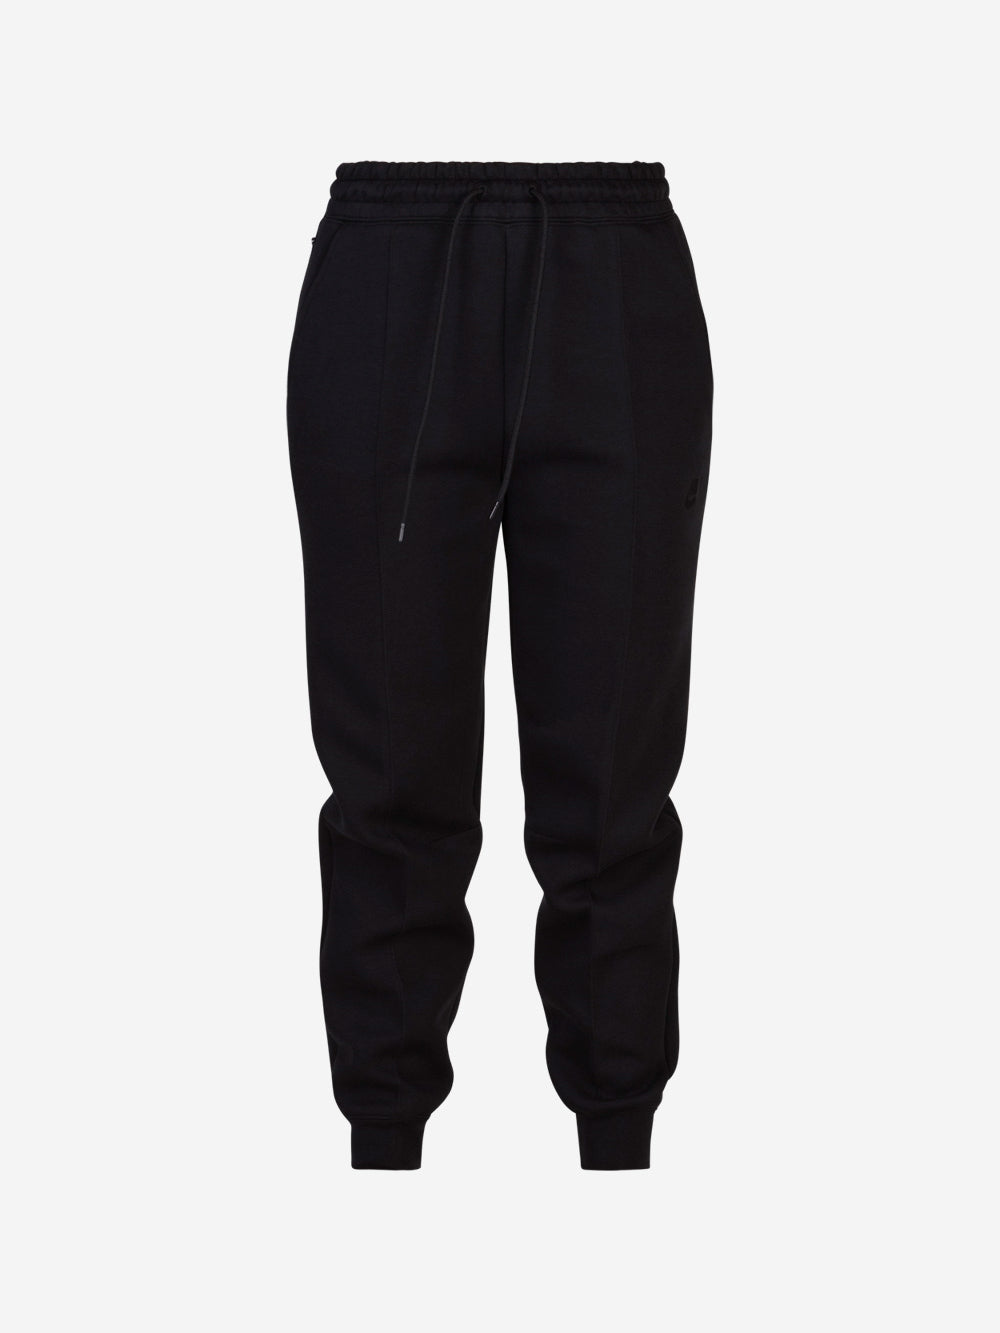 NIKE Sportswear Tech Fleece Pants FB8330 | Urbanstaroma